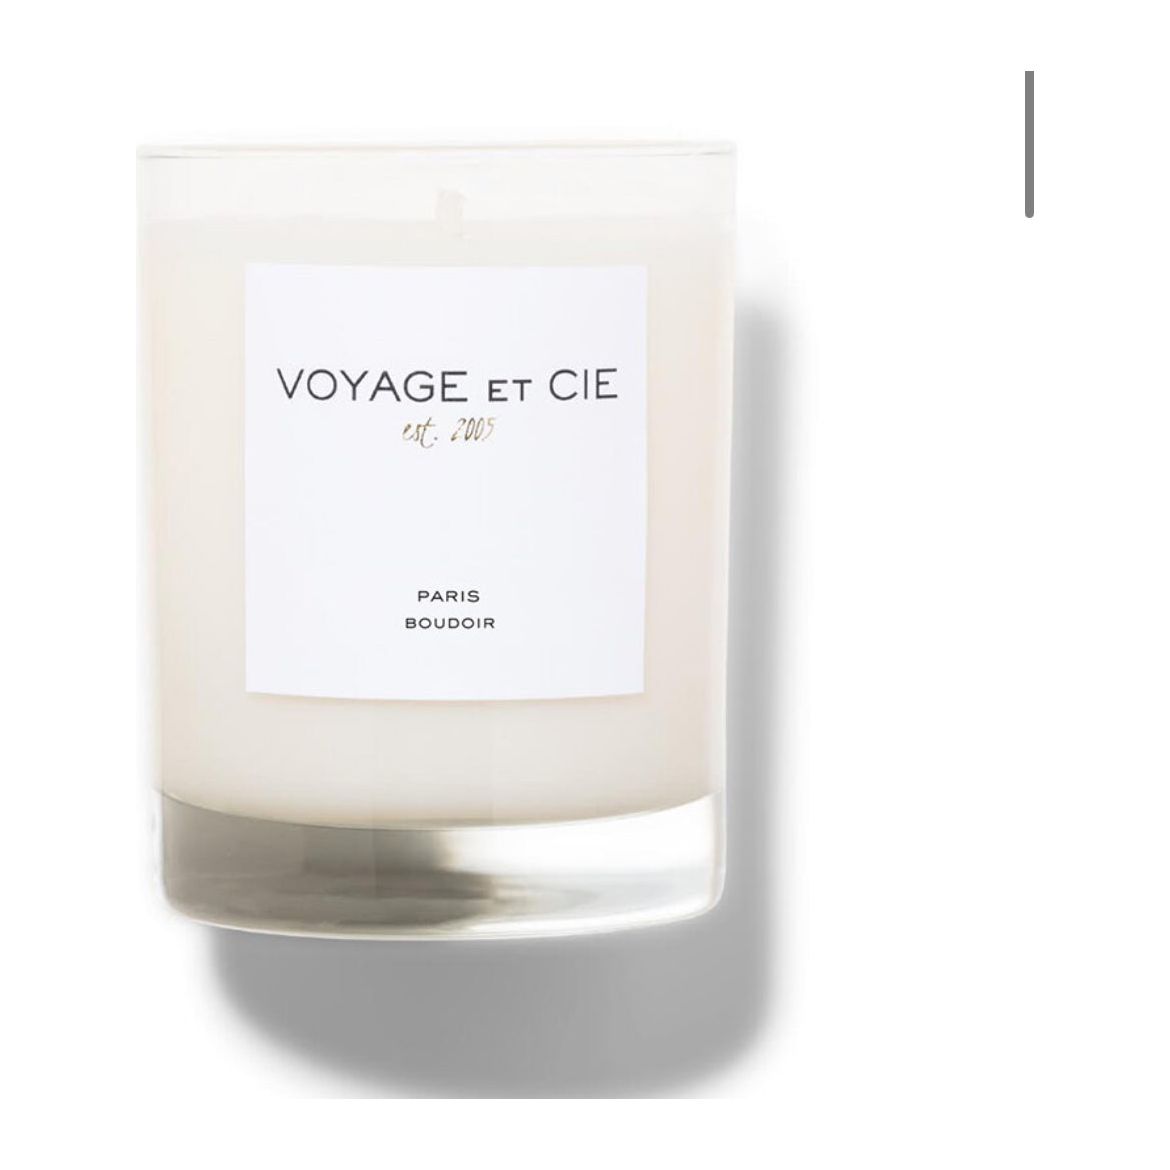 Paris "boudoir" scent candle